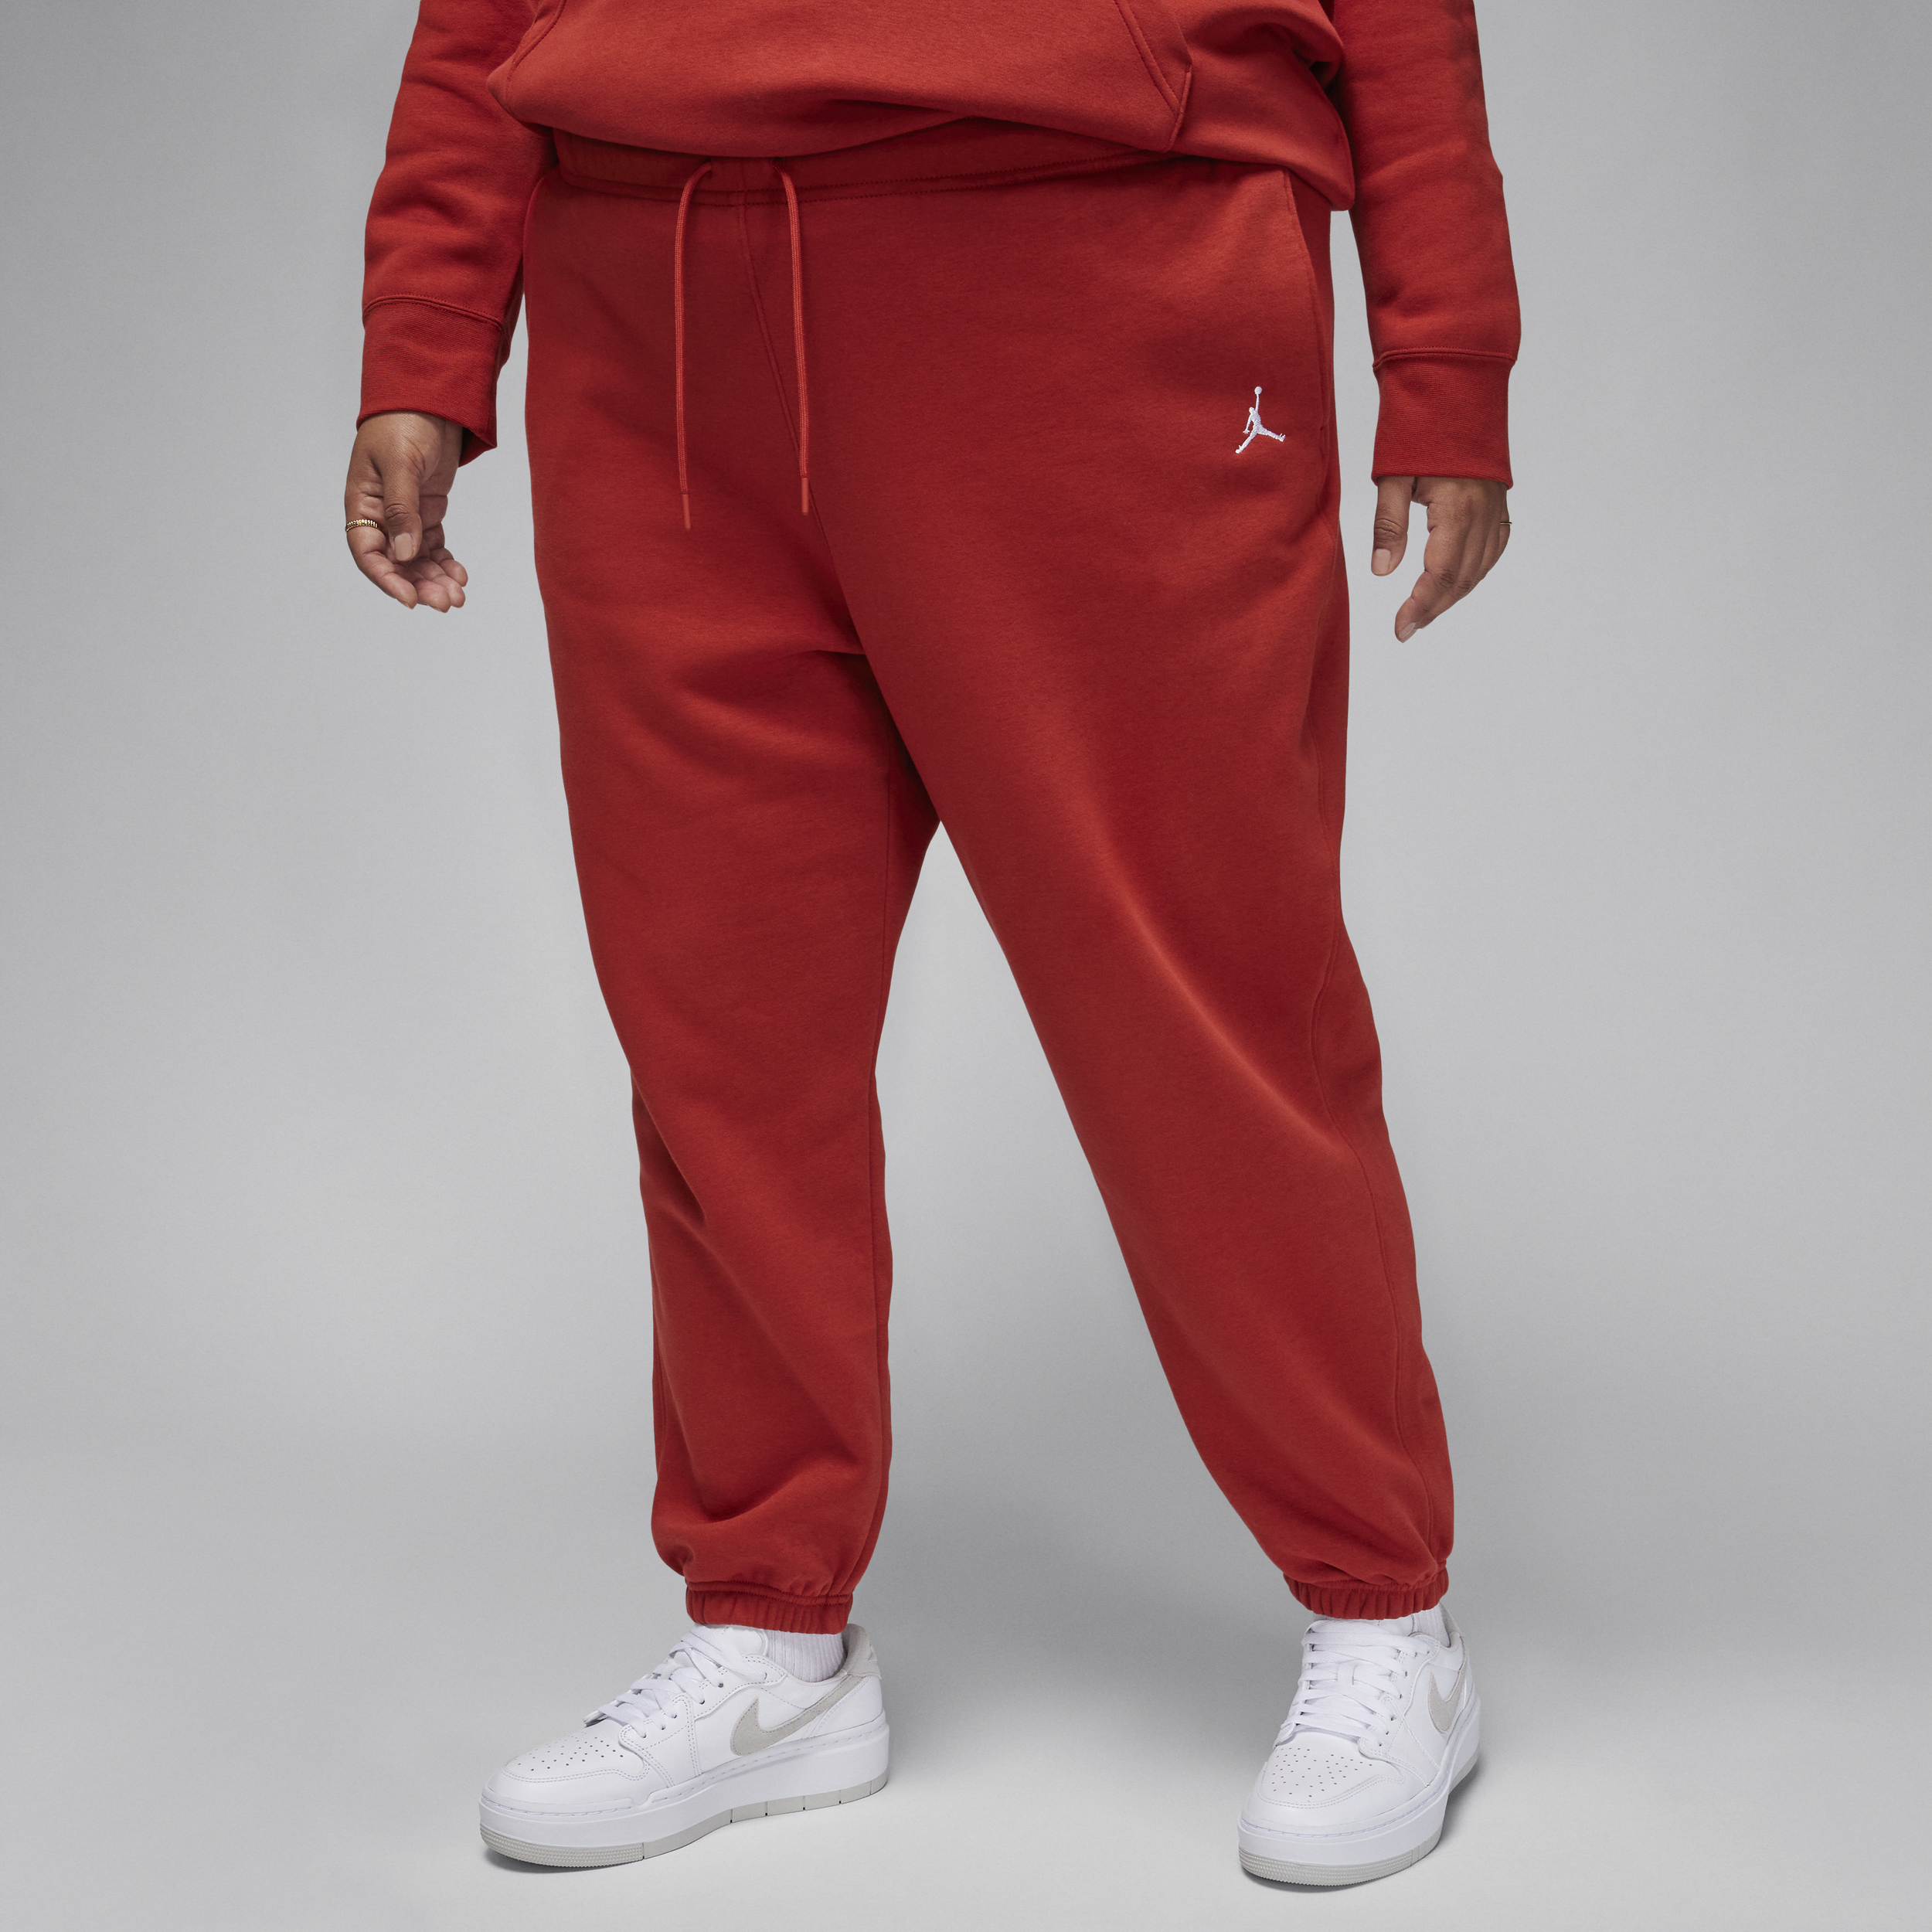 Jordan Brooklyn Fleece Pantalón - Mujer - Rojo